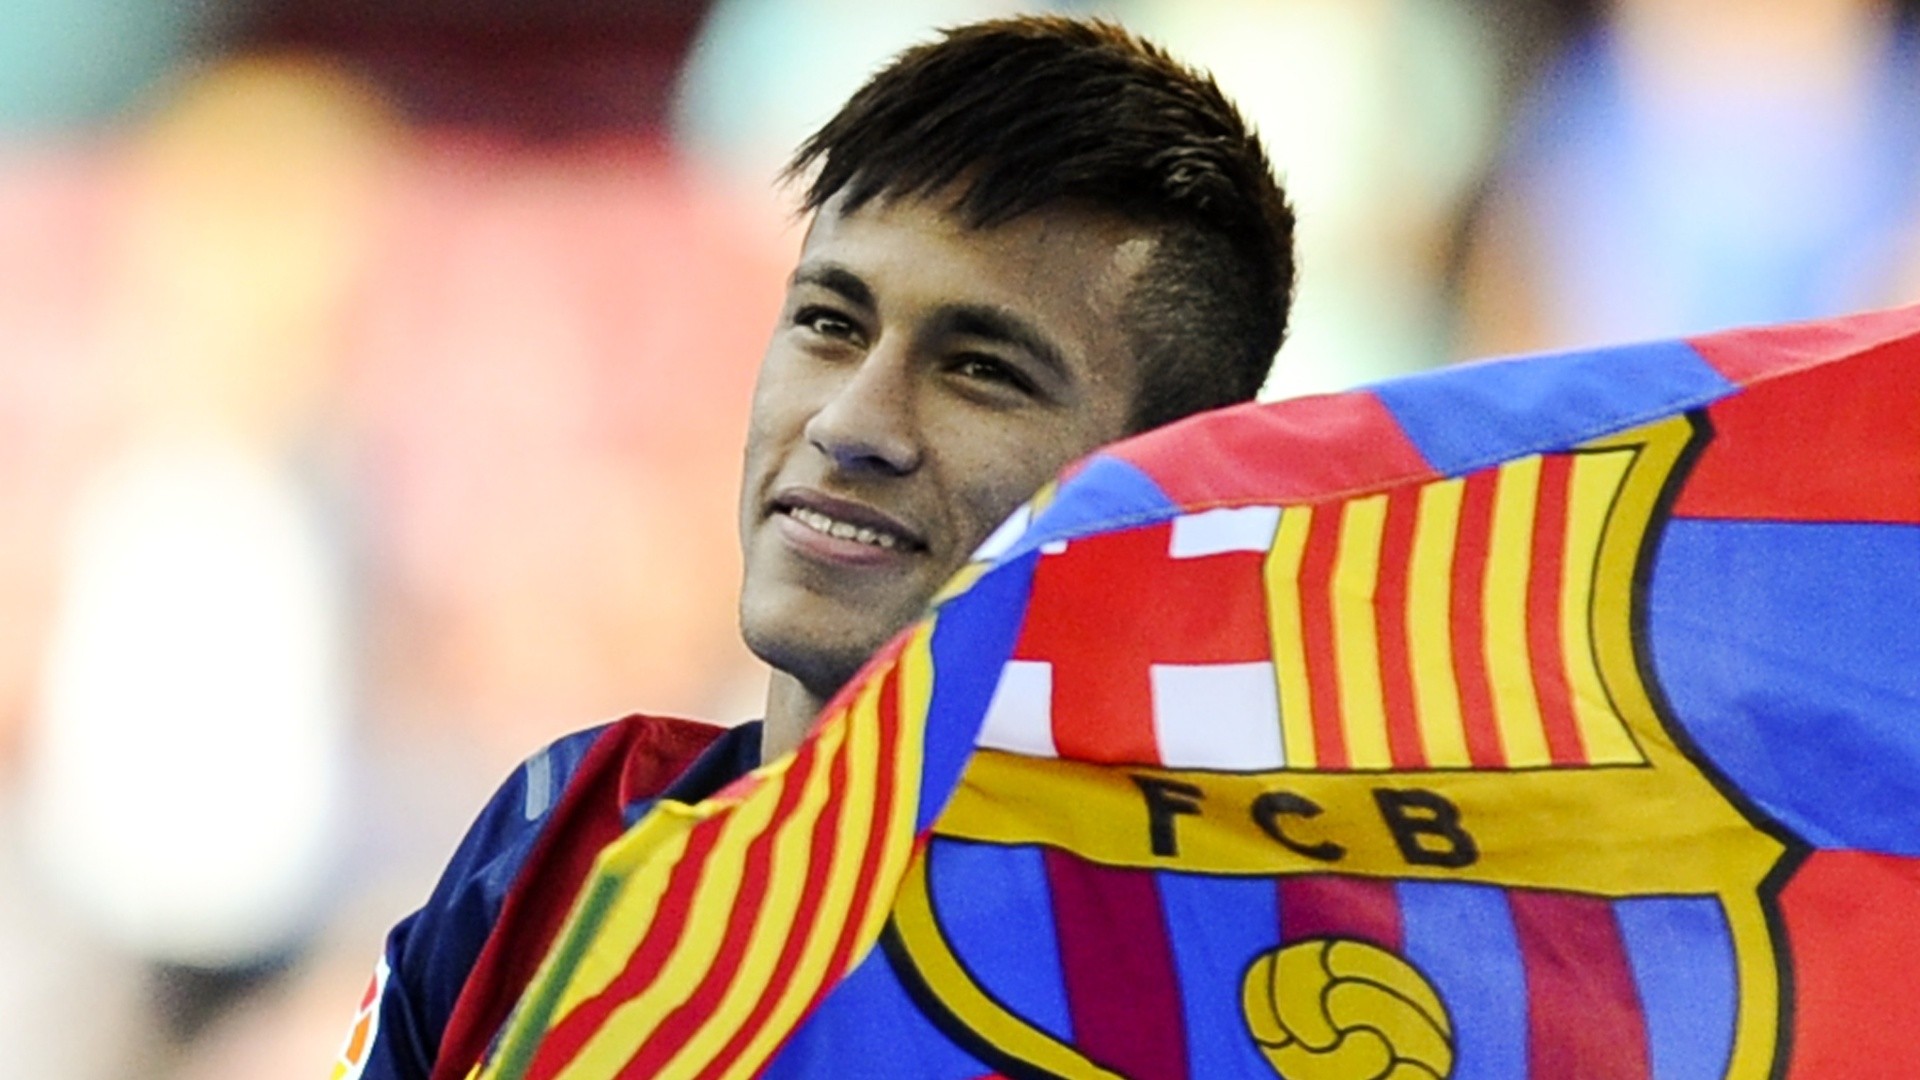 En España ubican a Neymar “más cerca del PSG” que del Barcelona